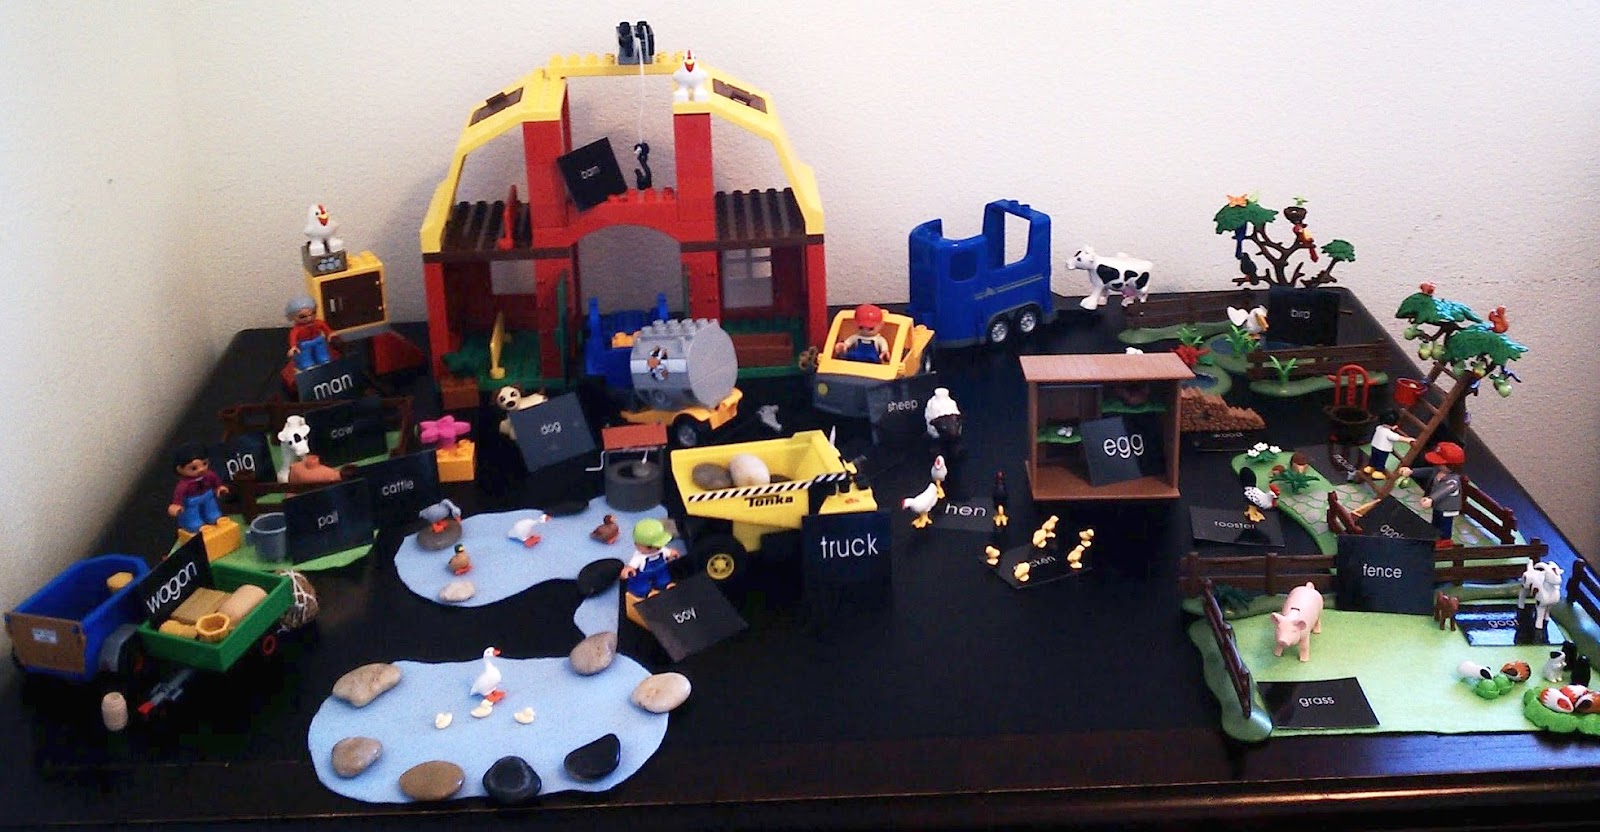 Enchanted Schoolroom: Montessori Grammar Farm With Legos